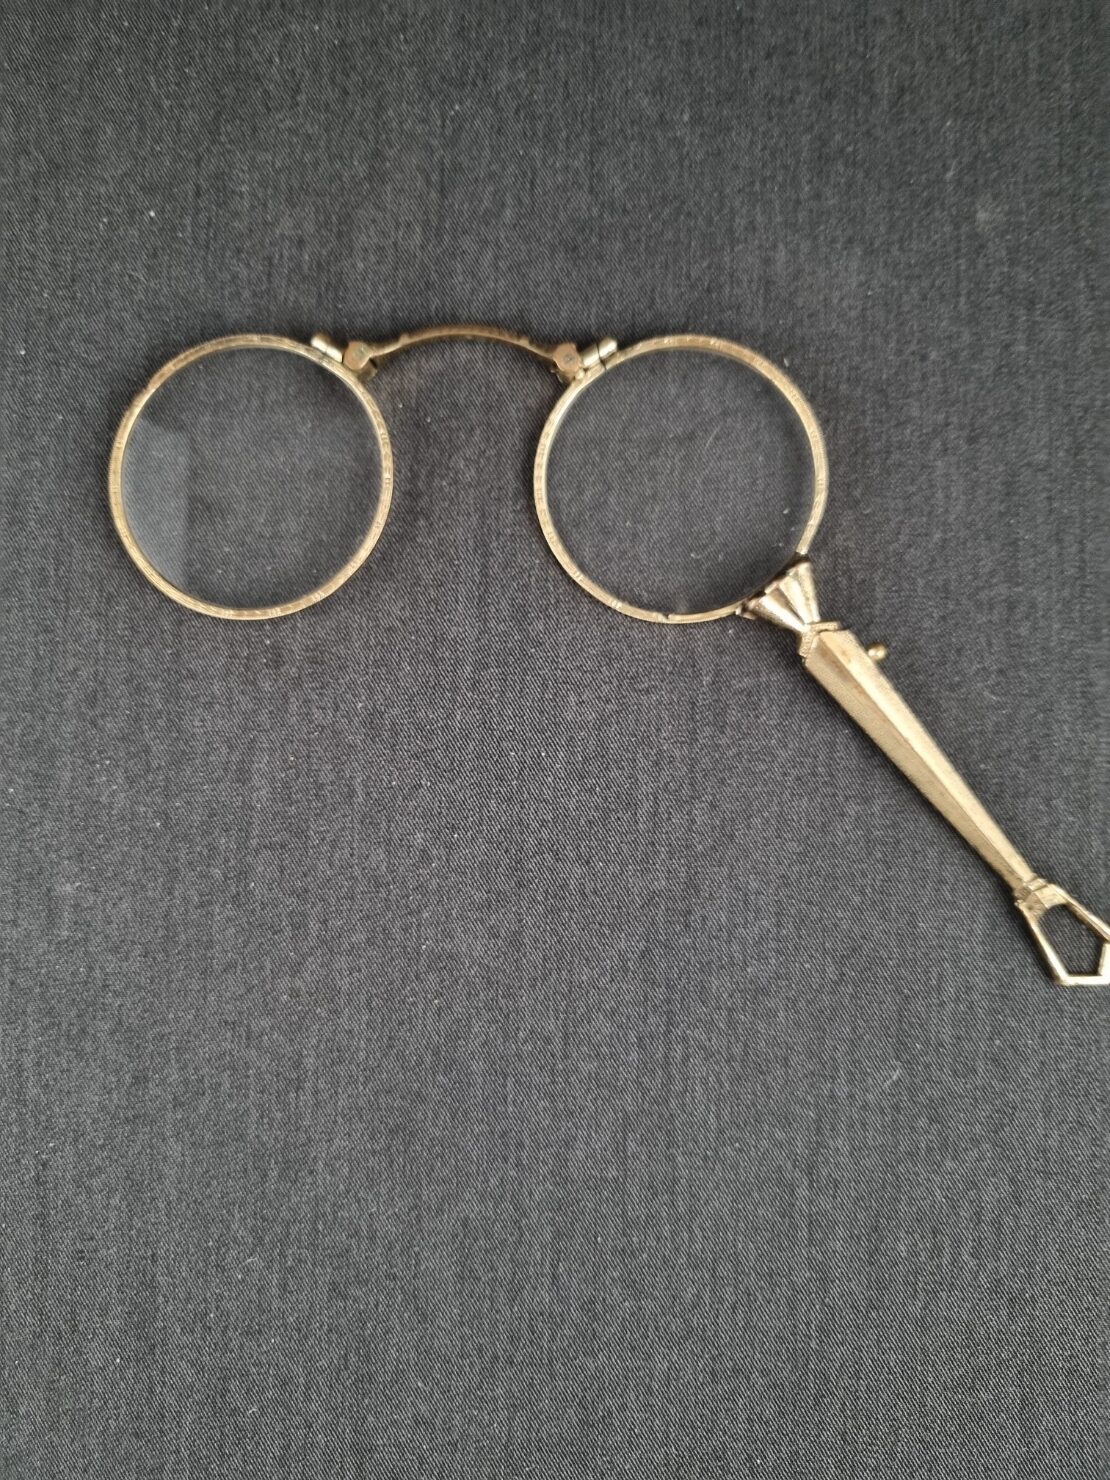 Et par gamle briller - Hartogsohn Antikviteter